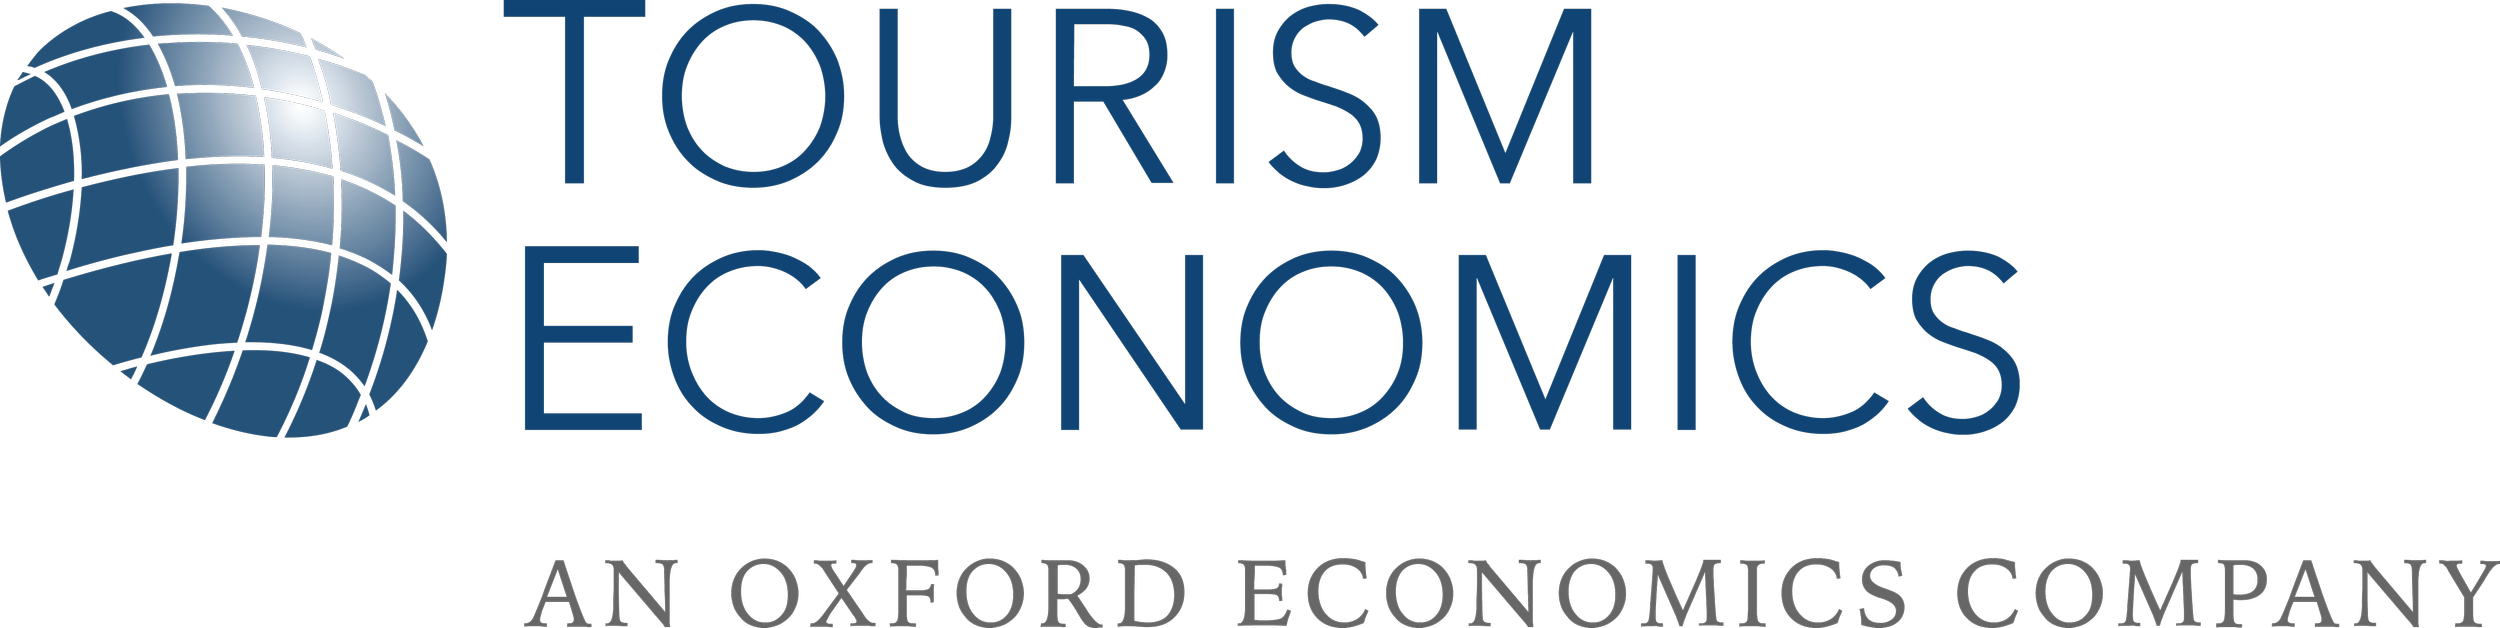 Tourism Economics (002).png